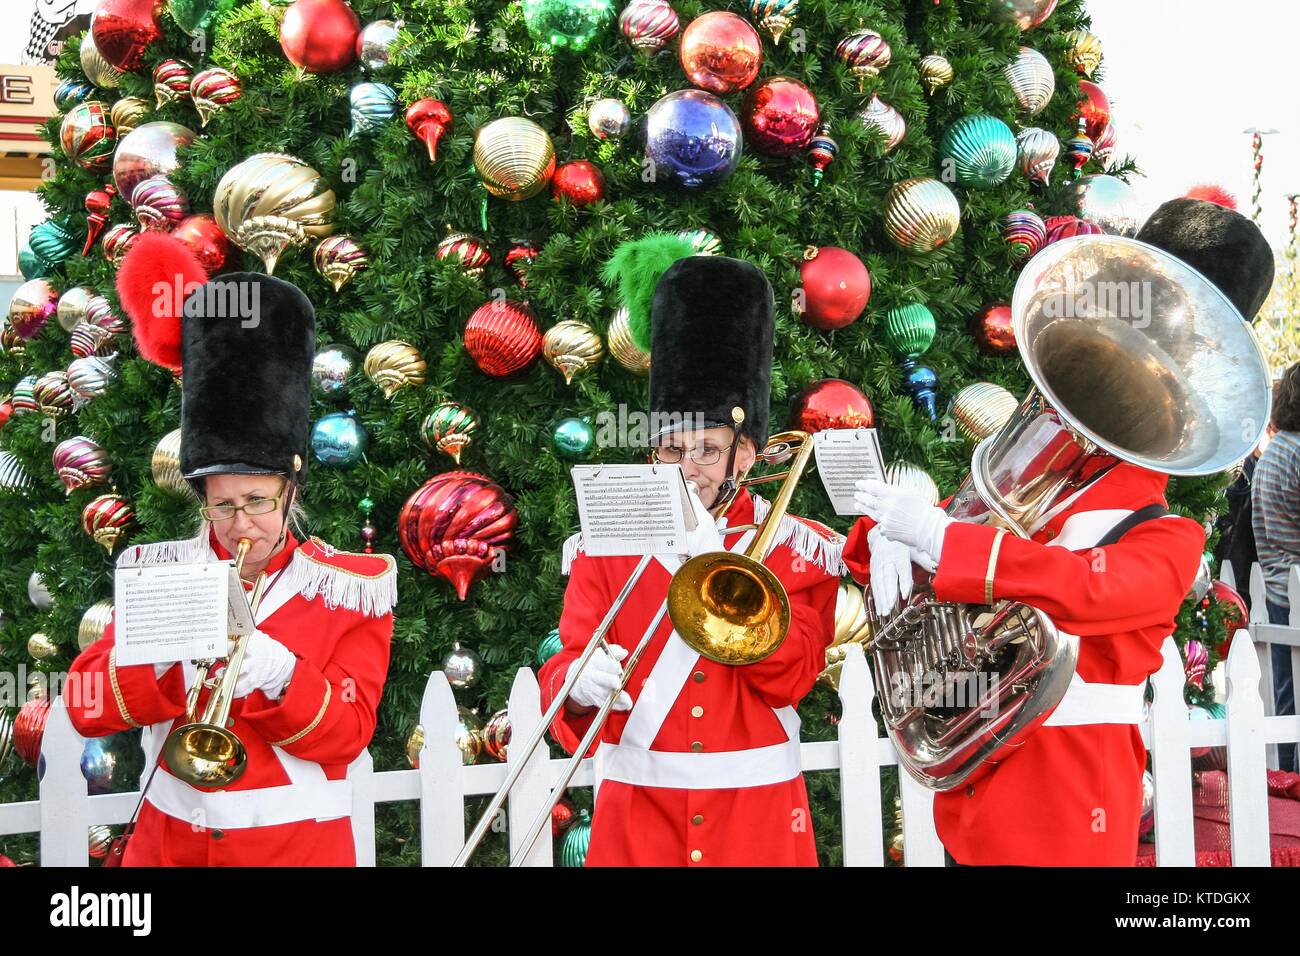 LOS ANGELES, Kalifornien, USA, 23. Dezember 2006 - Eine Gruppe von Musikern spielen Weihnachtslieder während der Weihnachtszeit im Grove Mall. Stockfoto